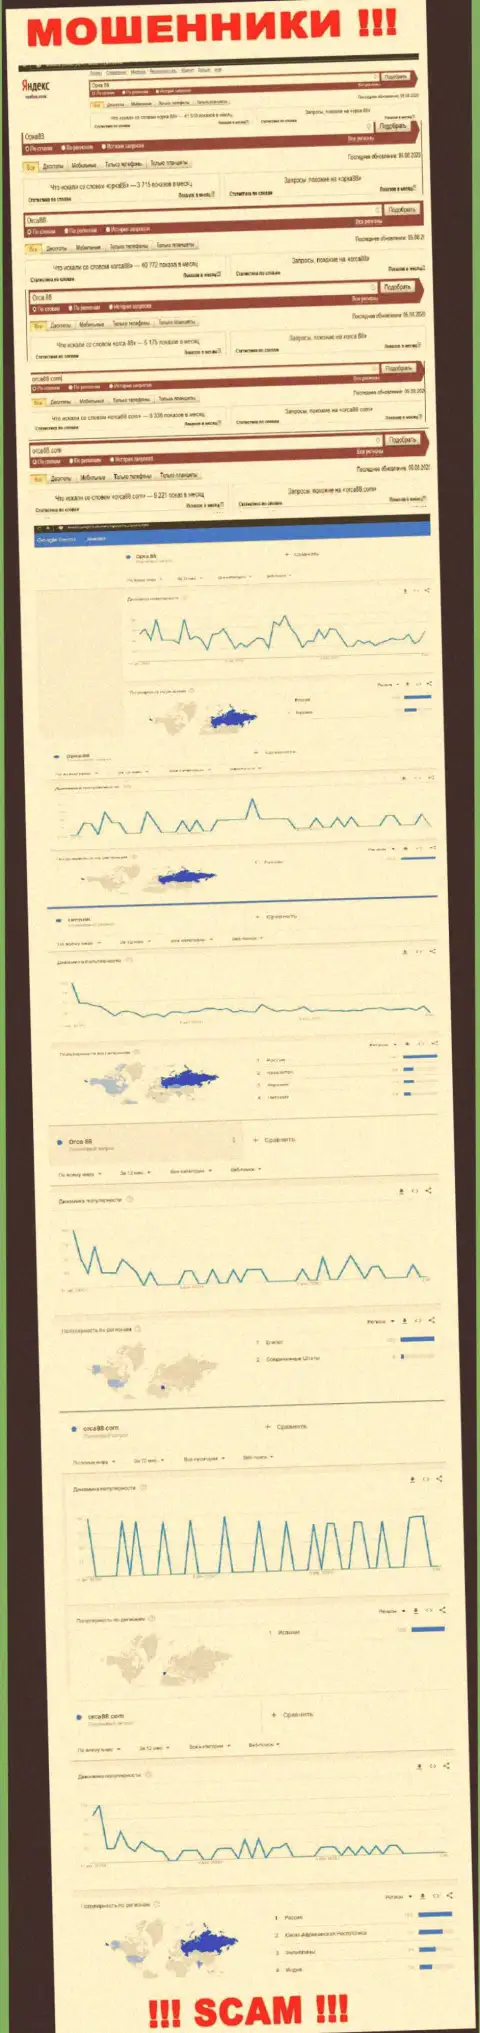 Аналитика поисковых запросов по мошенникам ORCA88 CASINO во всемирной паутине